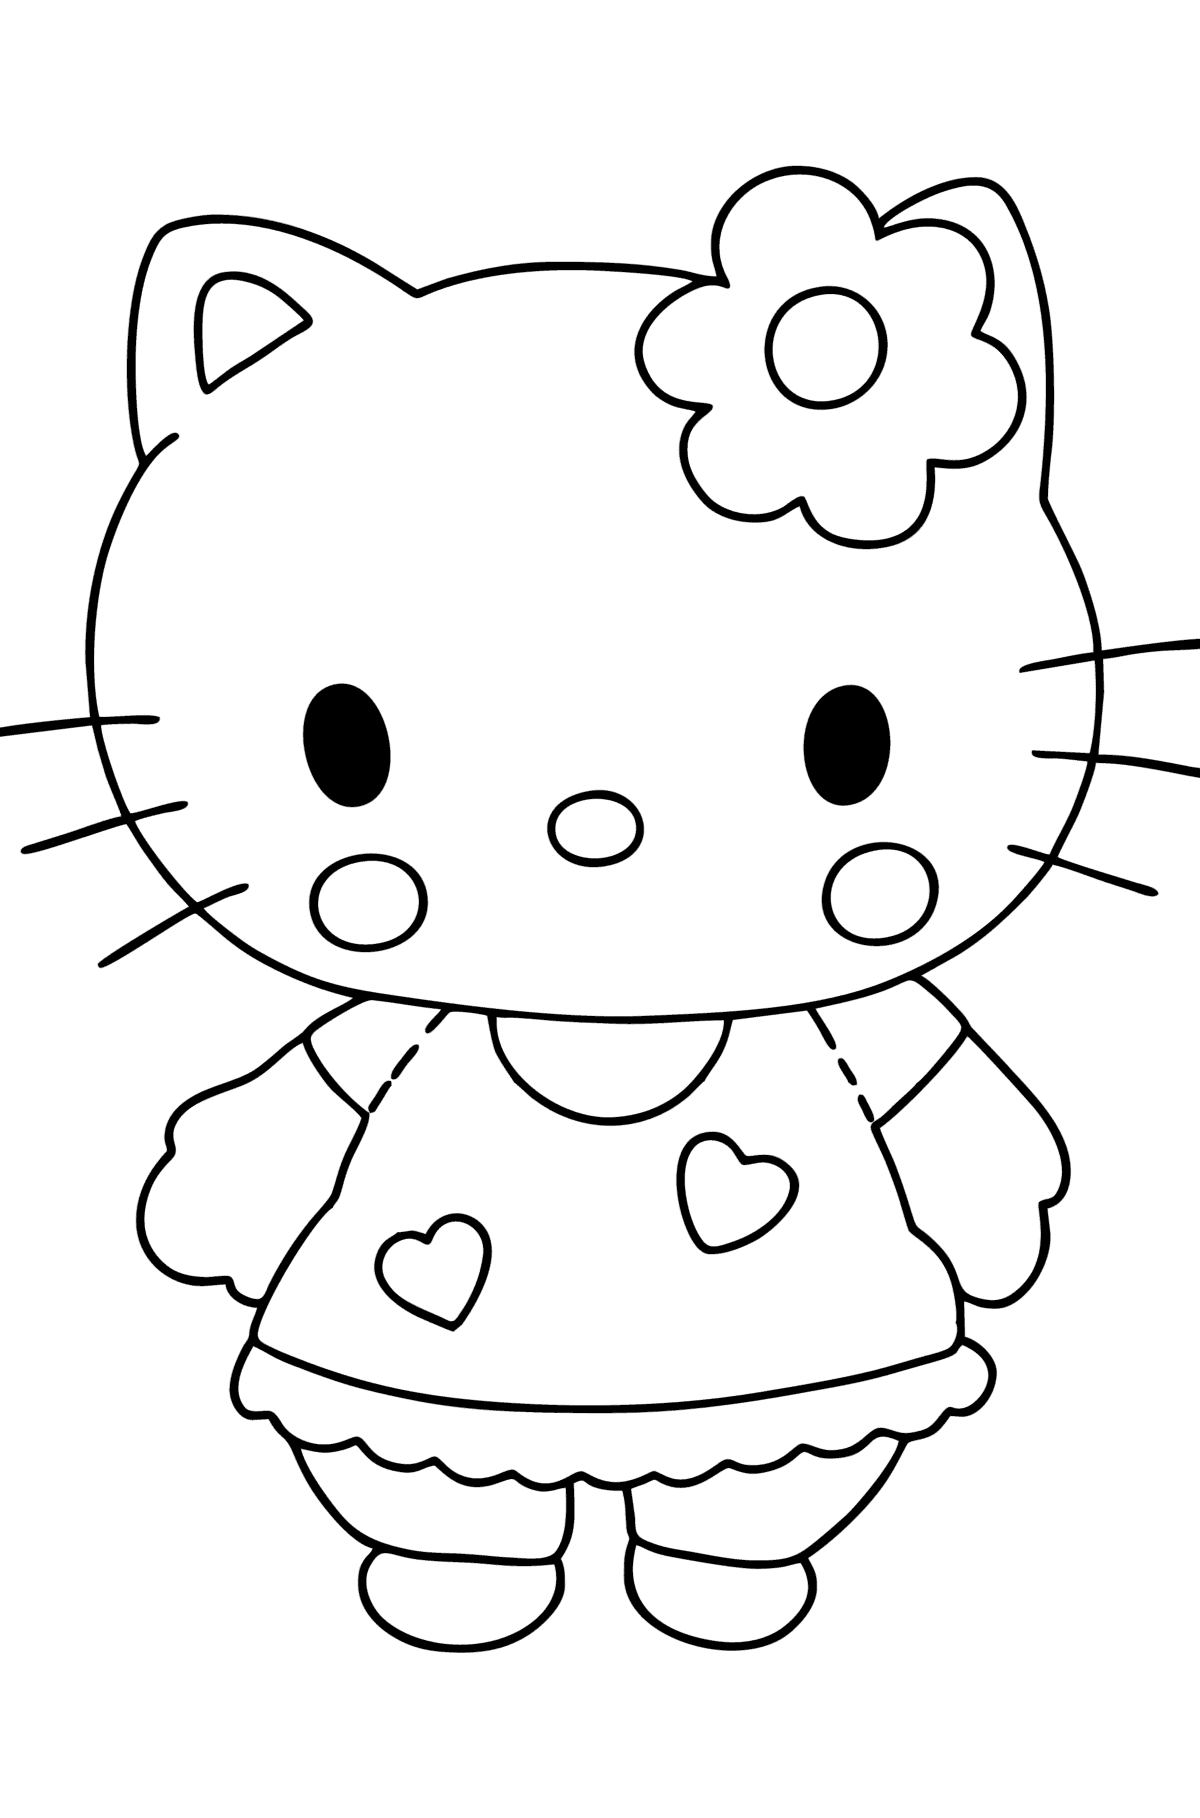 Tegning til fargelegging Hello Kitty - Tegninger til fargelegging for barn